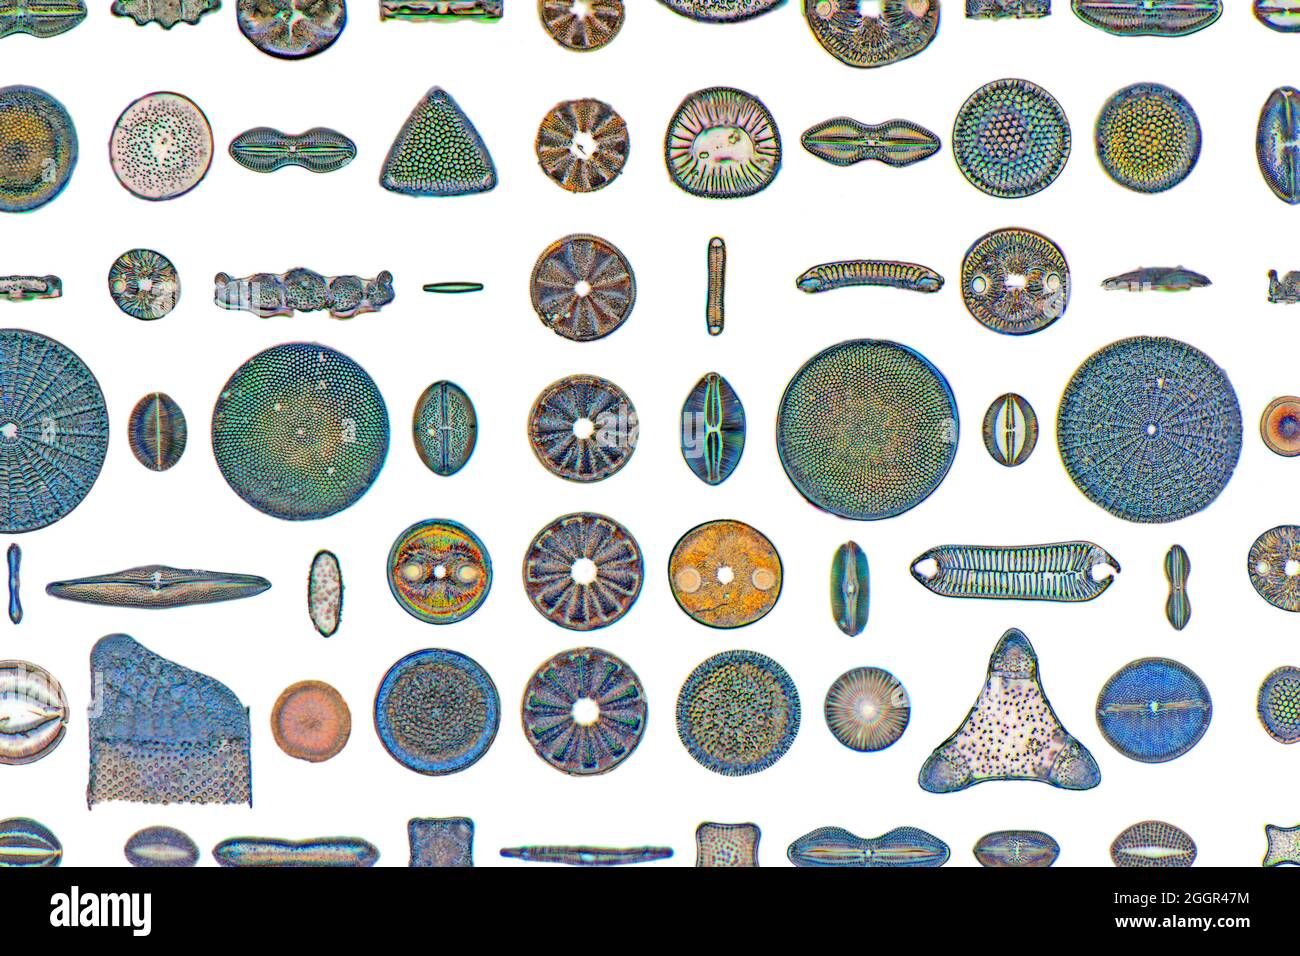 Diatomi fossili, Lomita, California, Stati Uniti d'America, selezione di forme diverse, ritaglio di fondo bianco Foto Stock